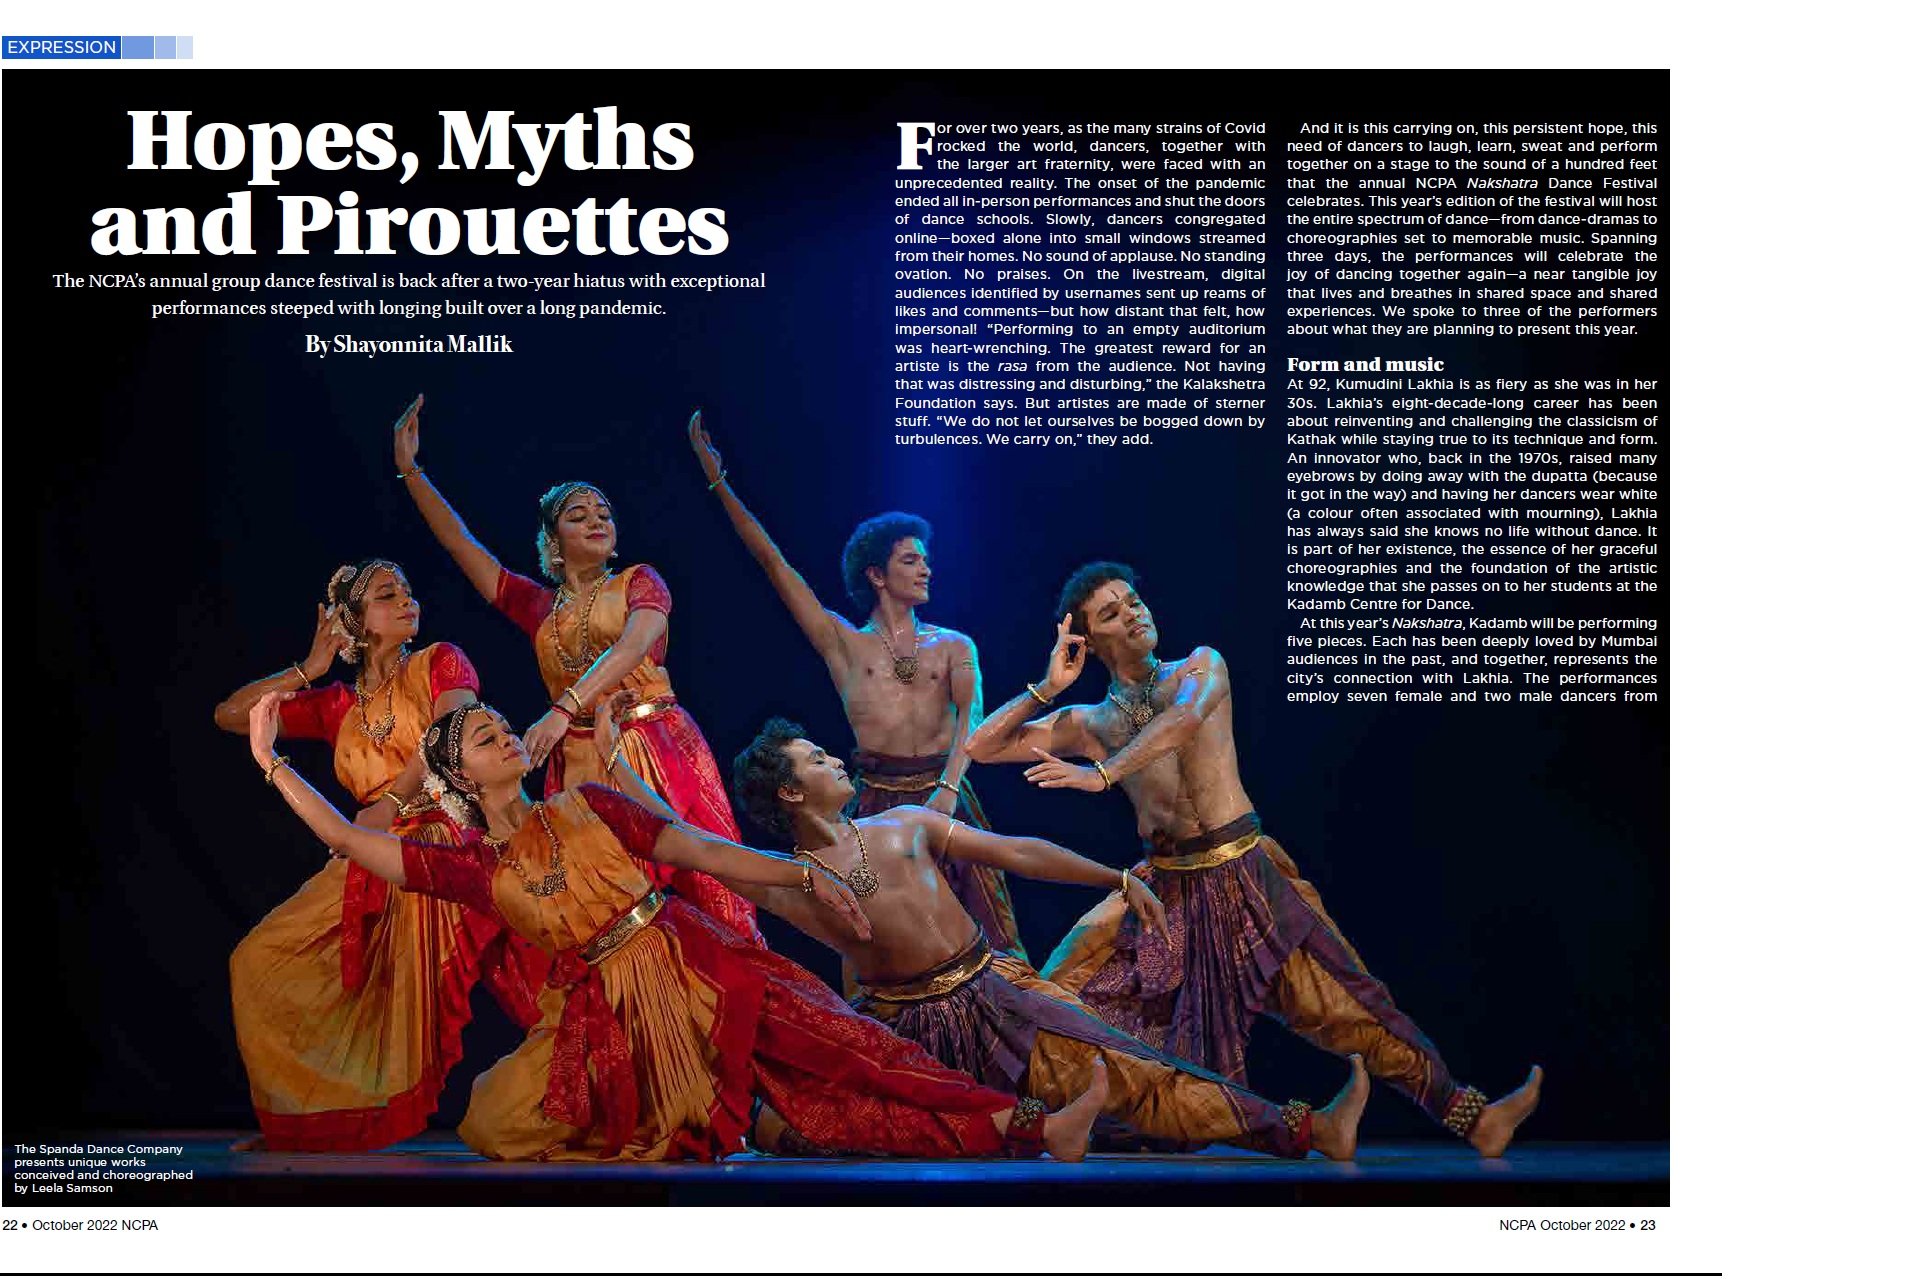 Hopes, Myths and Pirouettes - Shayonnita Mallik